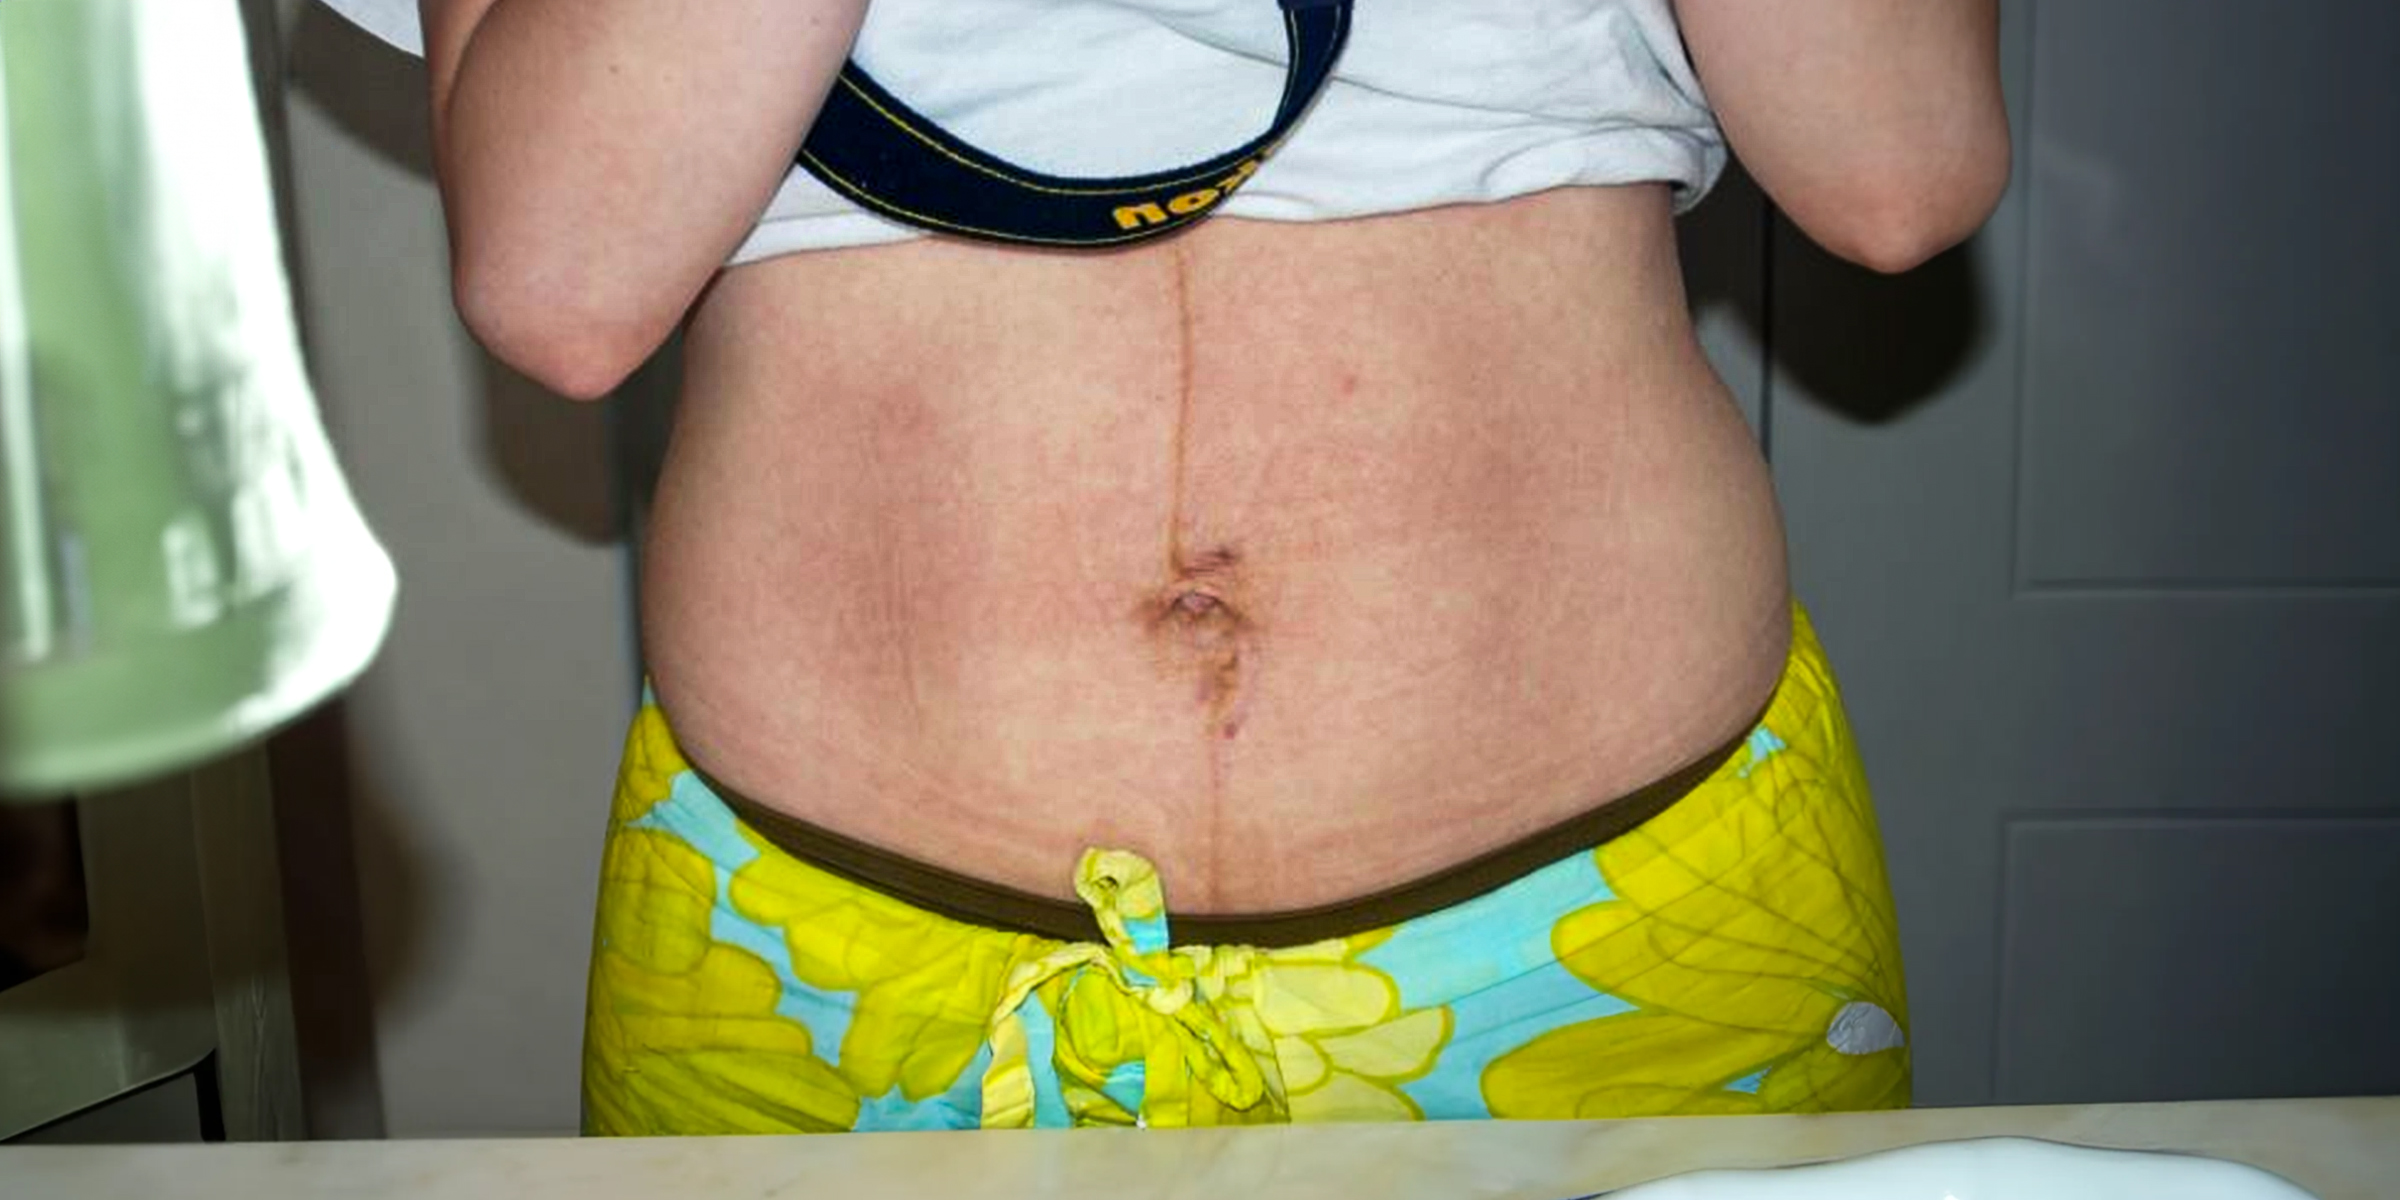 Le ventre d'une femme avec des vergetures | Source : Flickr